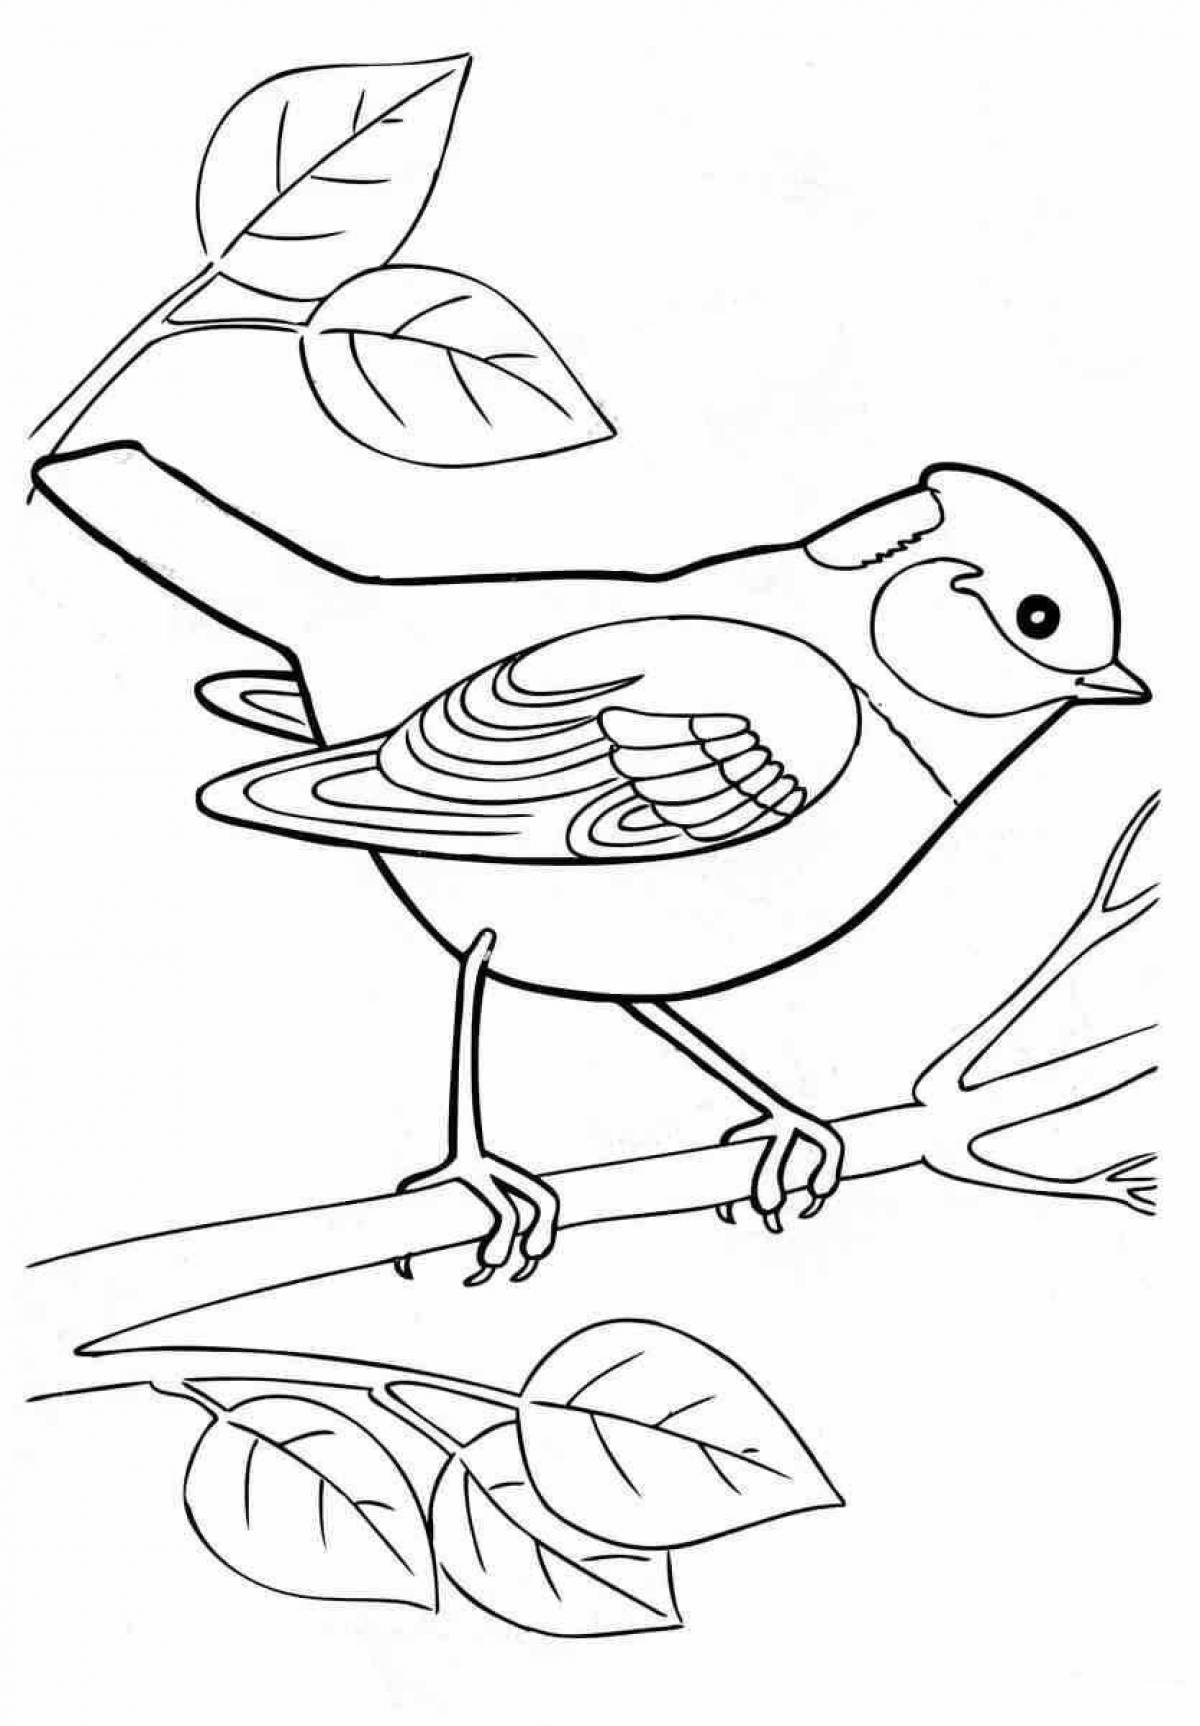 Adorable wintering birds coloring book for preschoolers